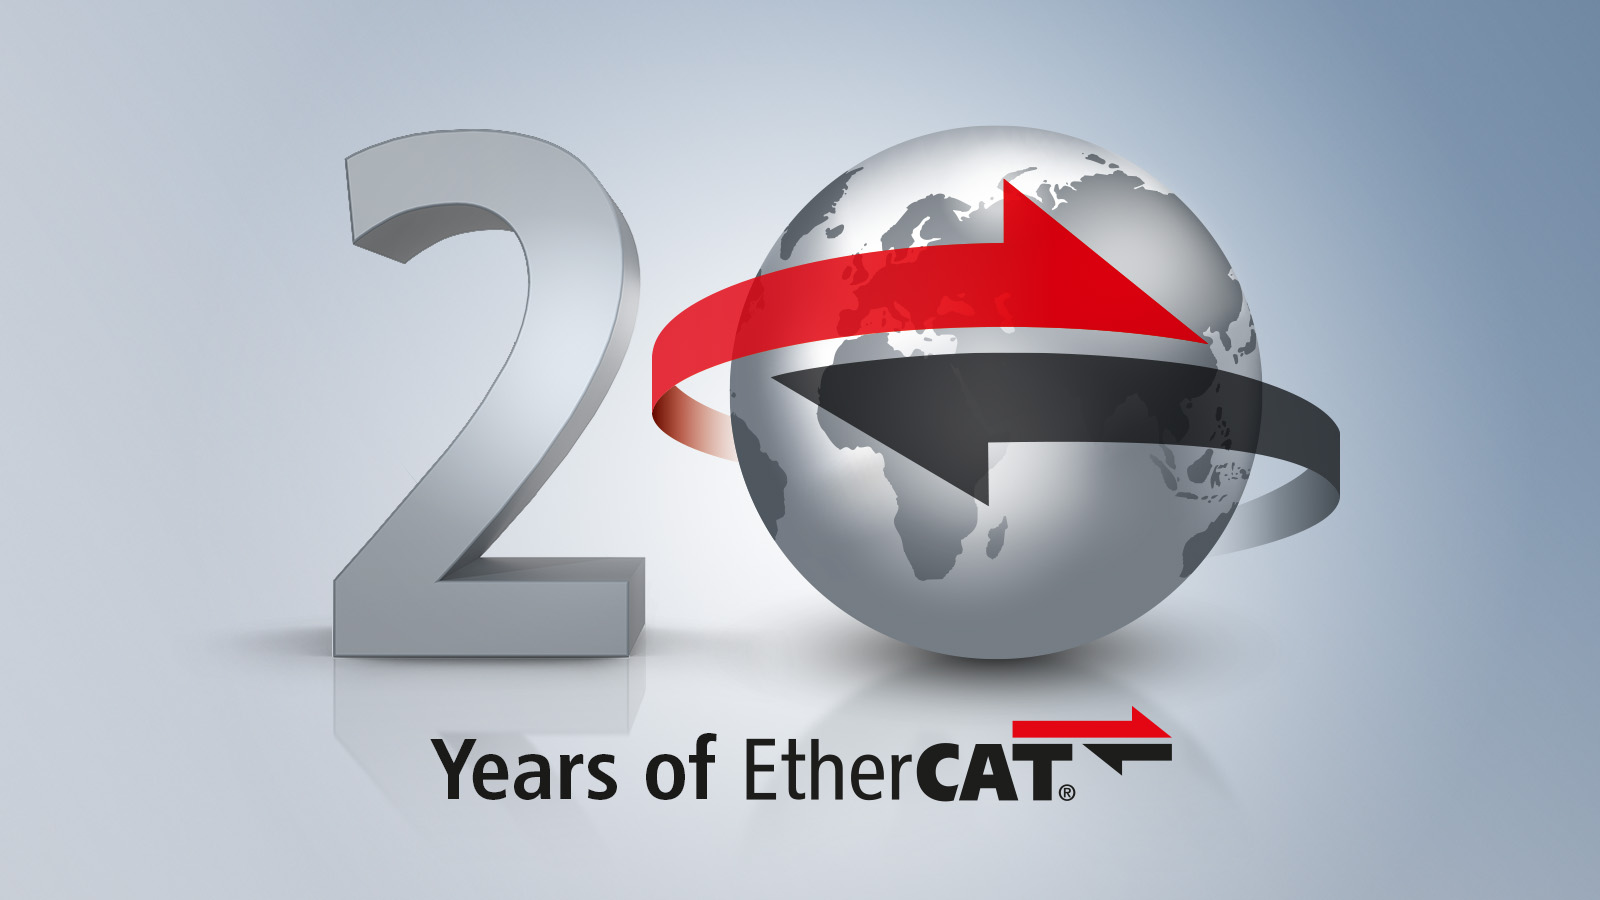 由倍福开发的 EtherCAT 超高速通信技术 20 年来取得了巨大成功，早已成为全球开放性实时以太网通信标准。 